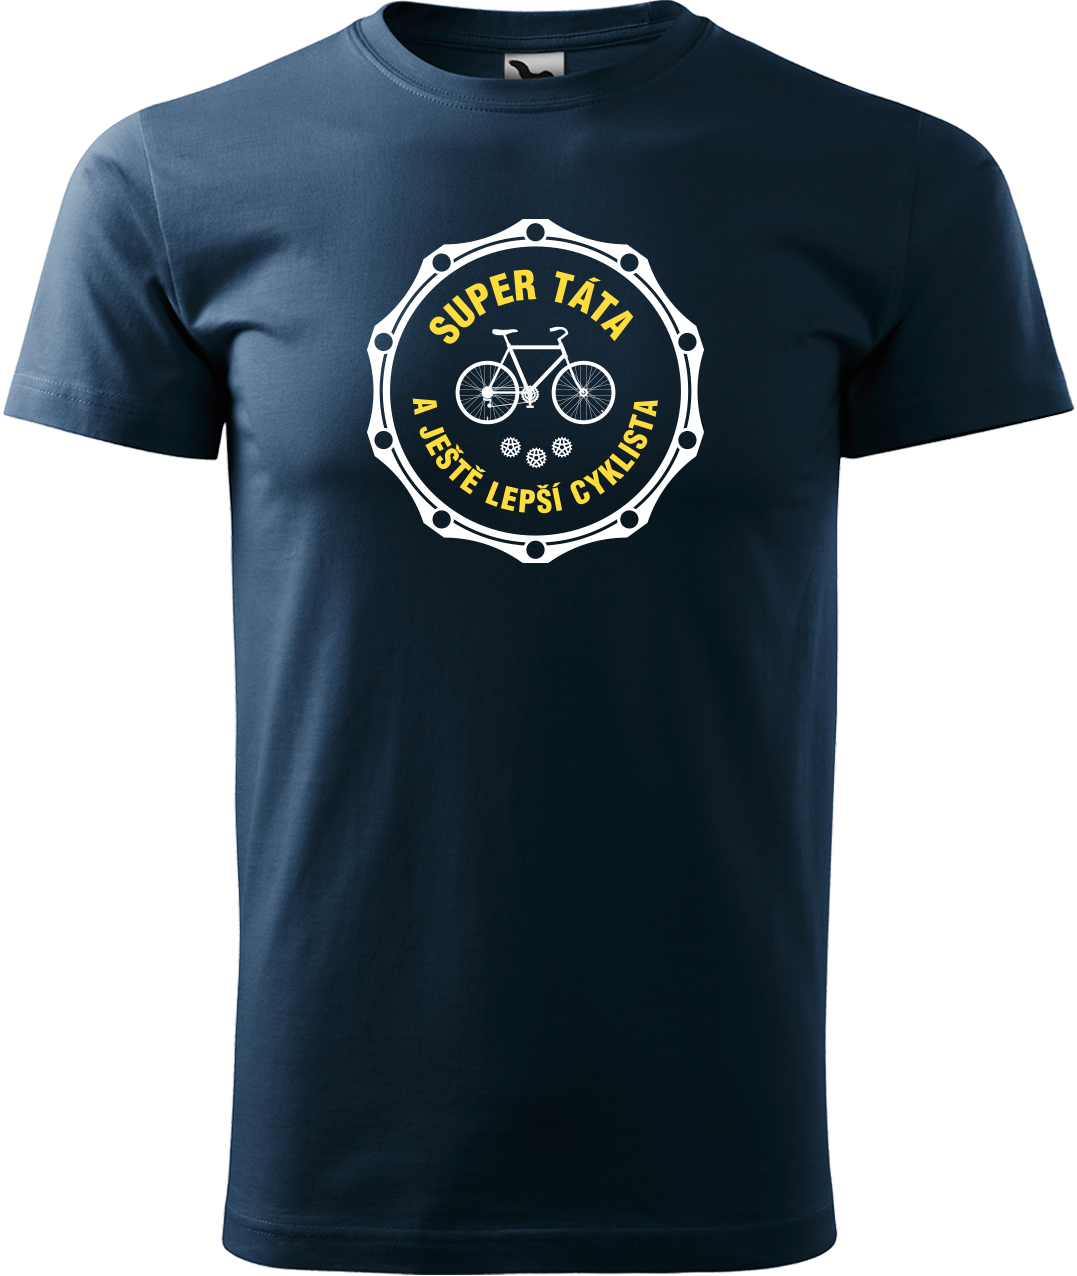 Pánské tričko pro cyklistu - Super táta a ještě lepší cyklista Velikost: 4XL, Barva: Námořní modrá (02)